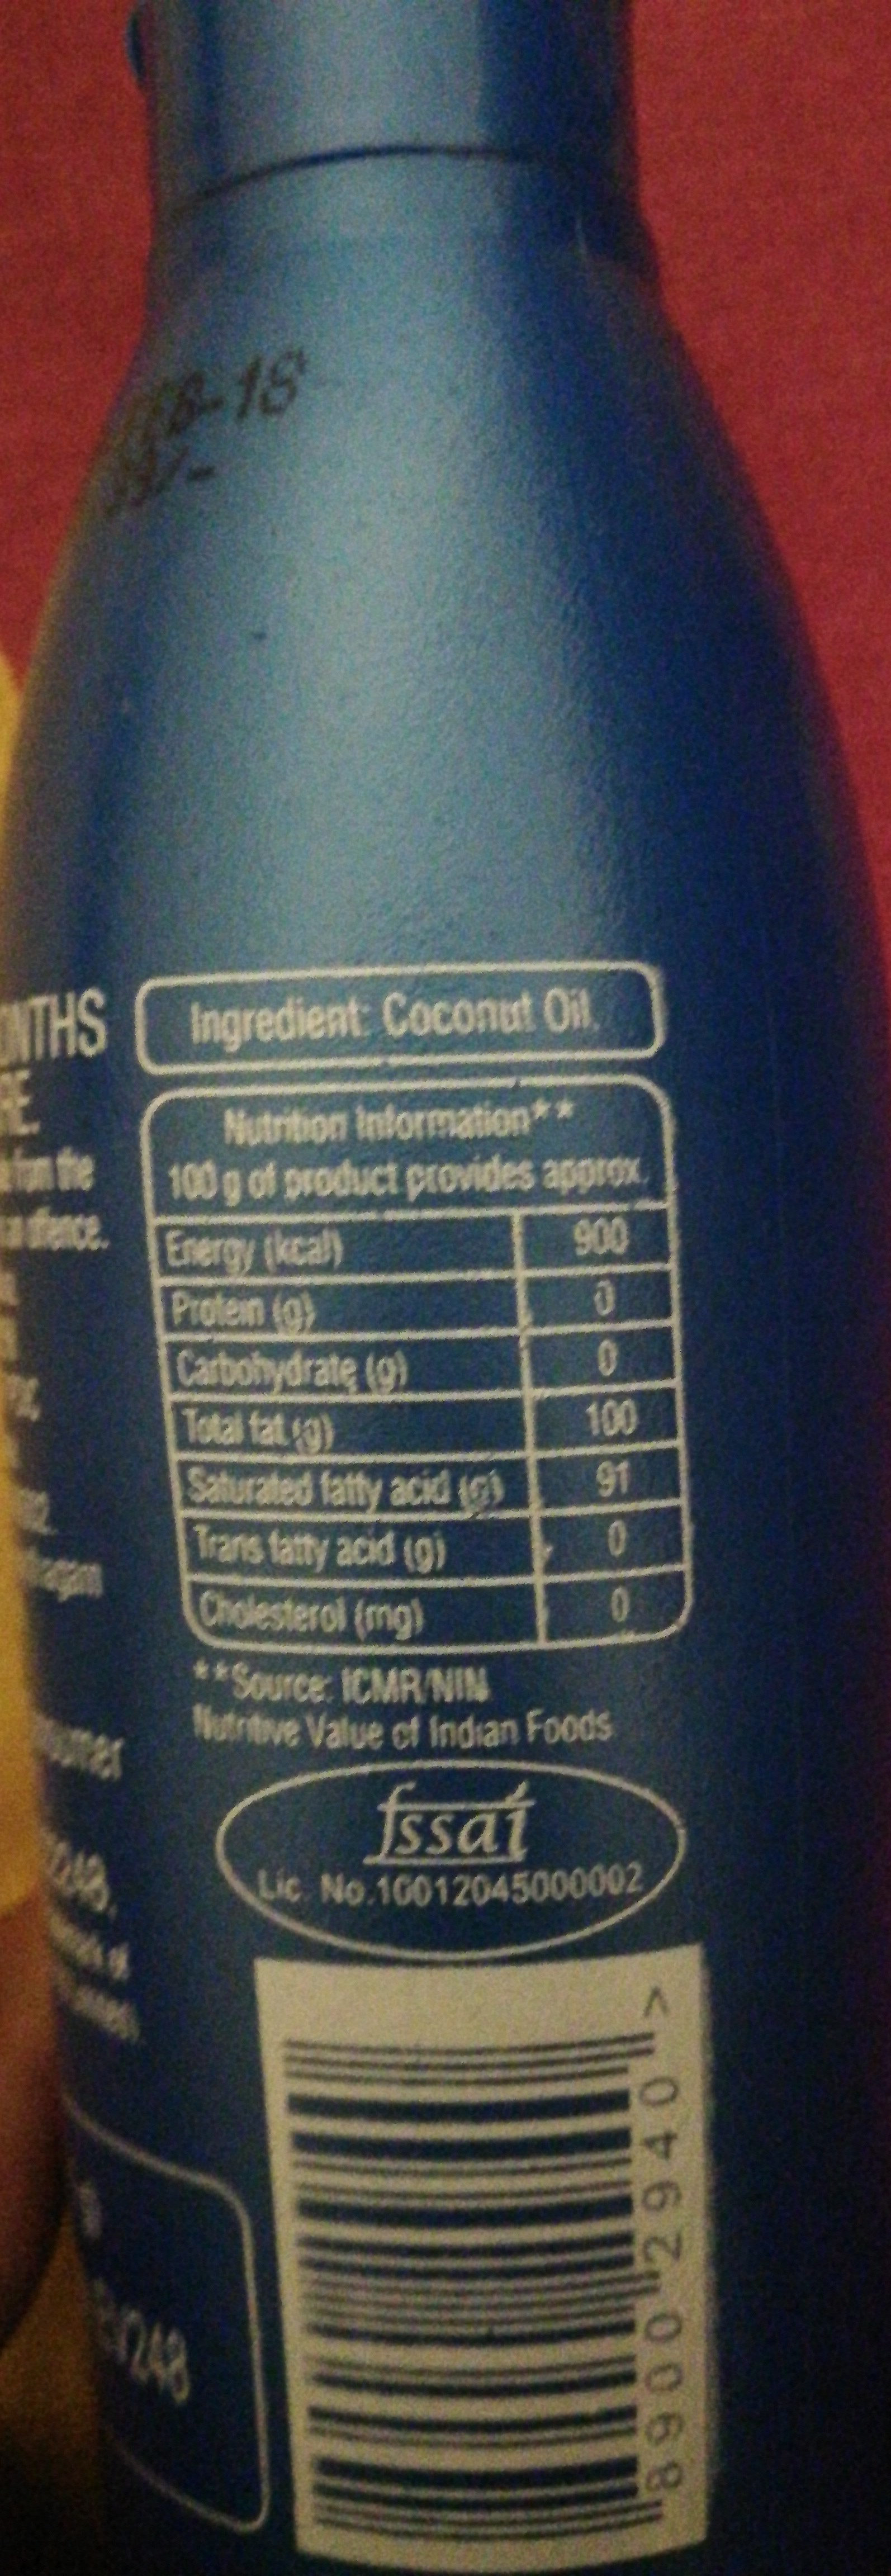 coconut oil - Ingredients - en